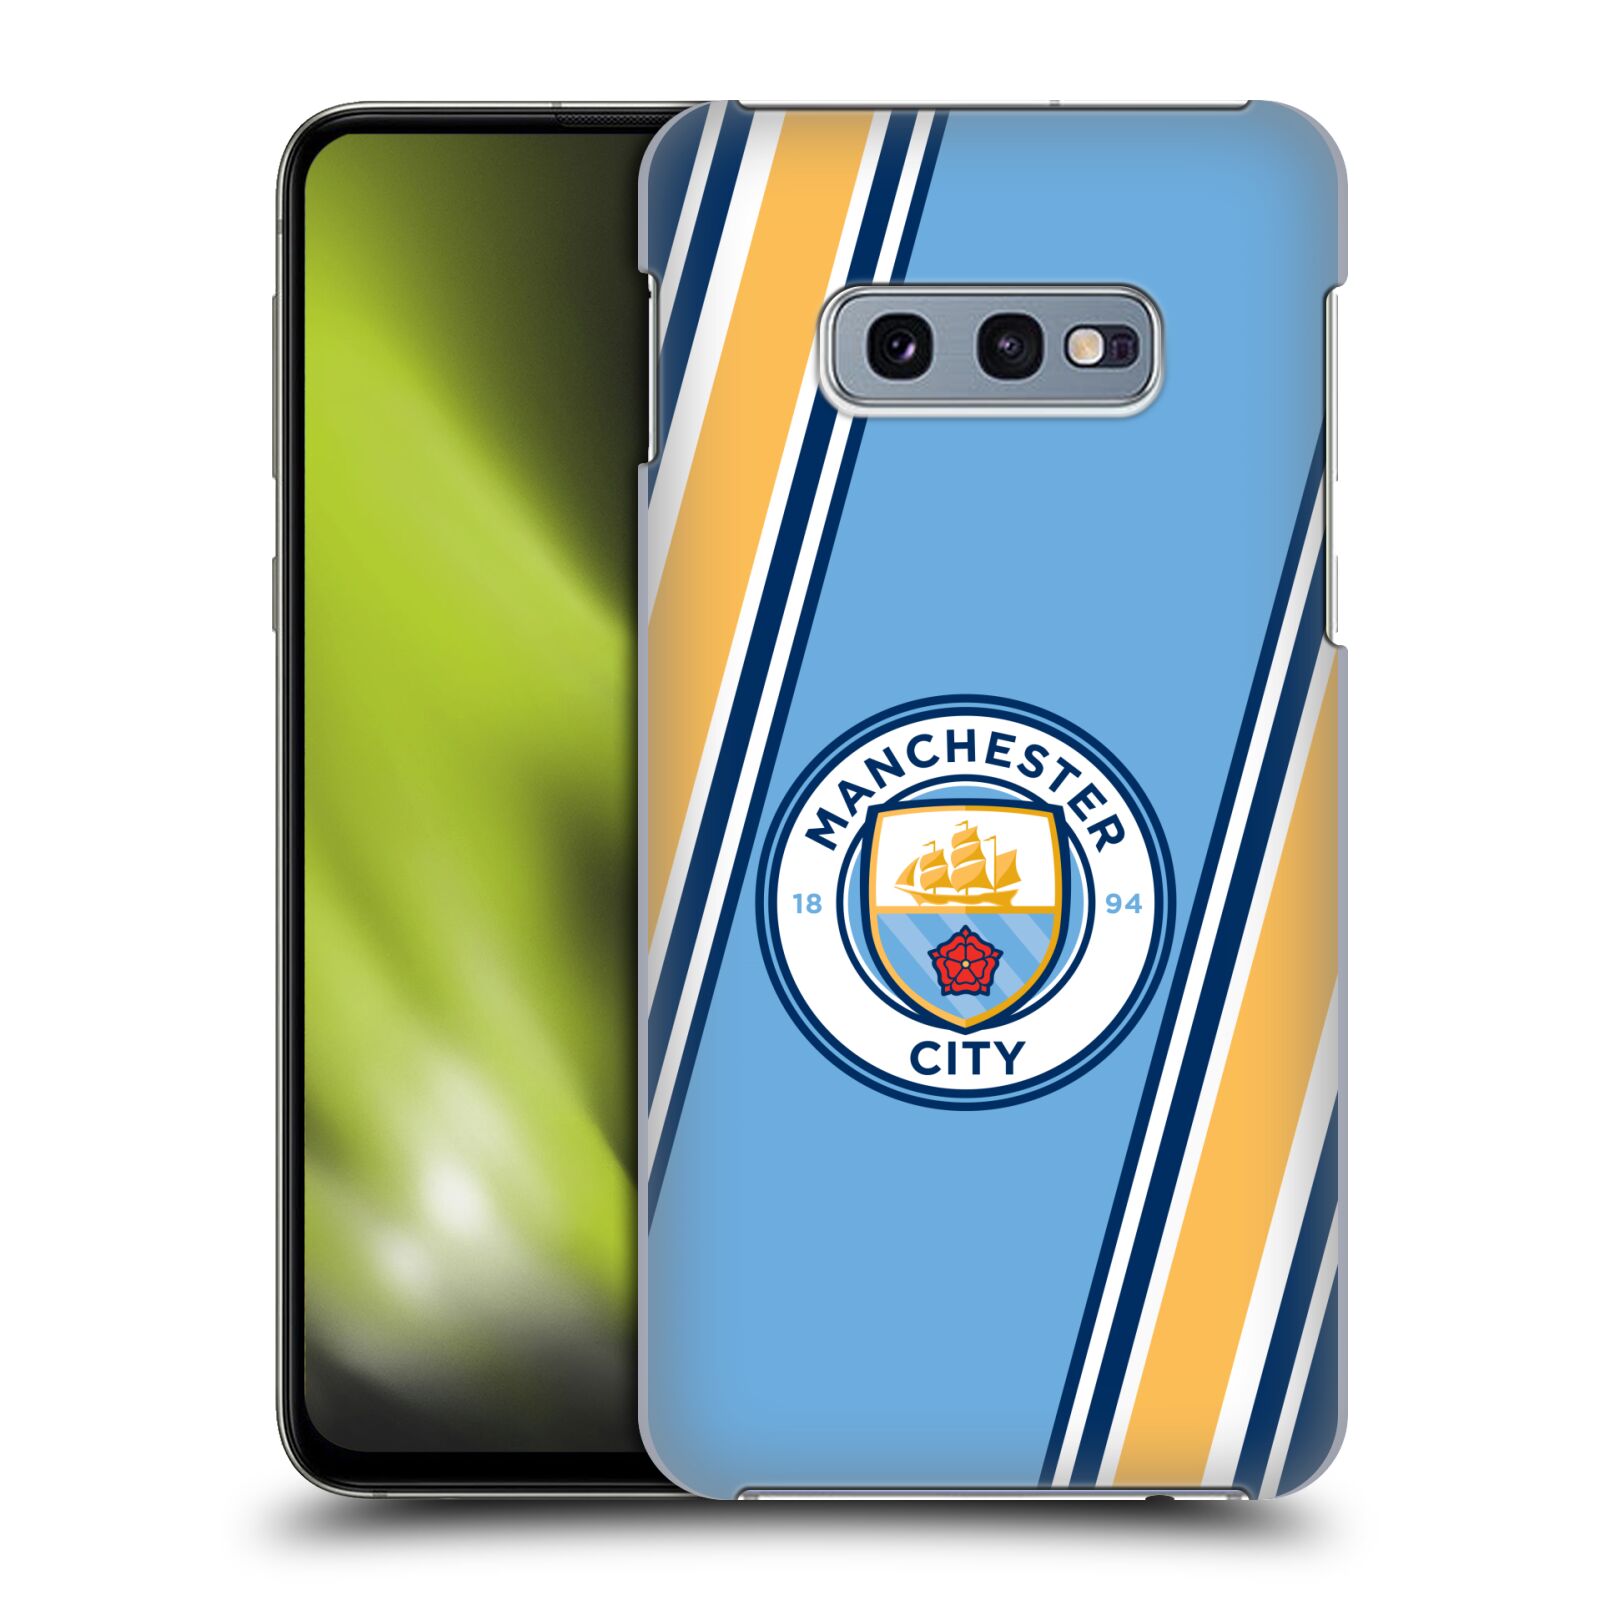 Pouzdro na mobil Samsung Galaxy S10e - HEAD CASE - Fotbalový klub Manchester City modrá barva žluté pruhy